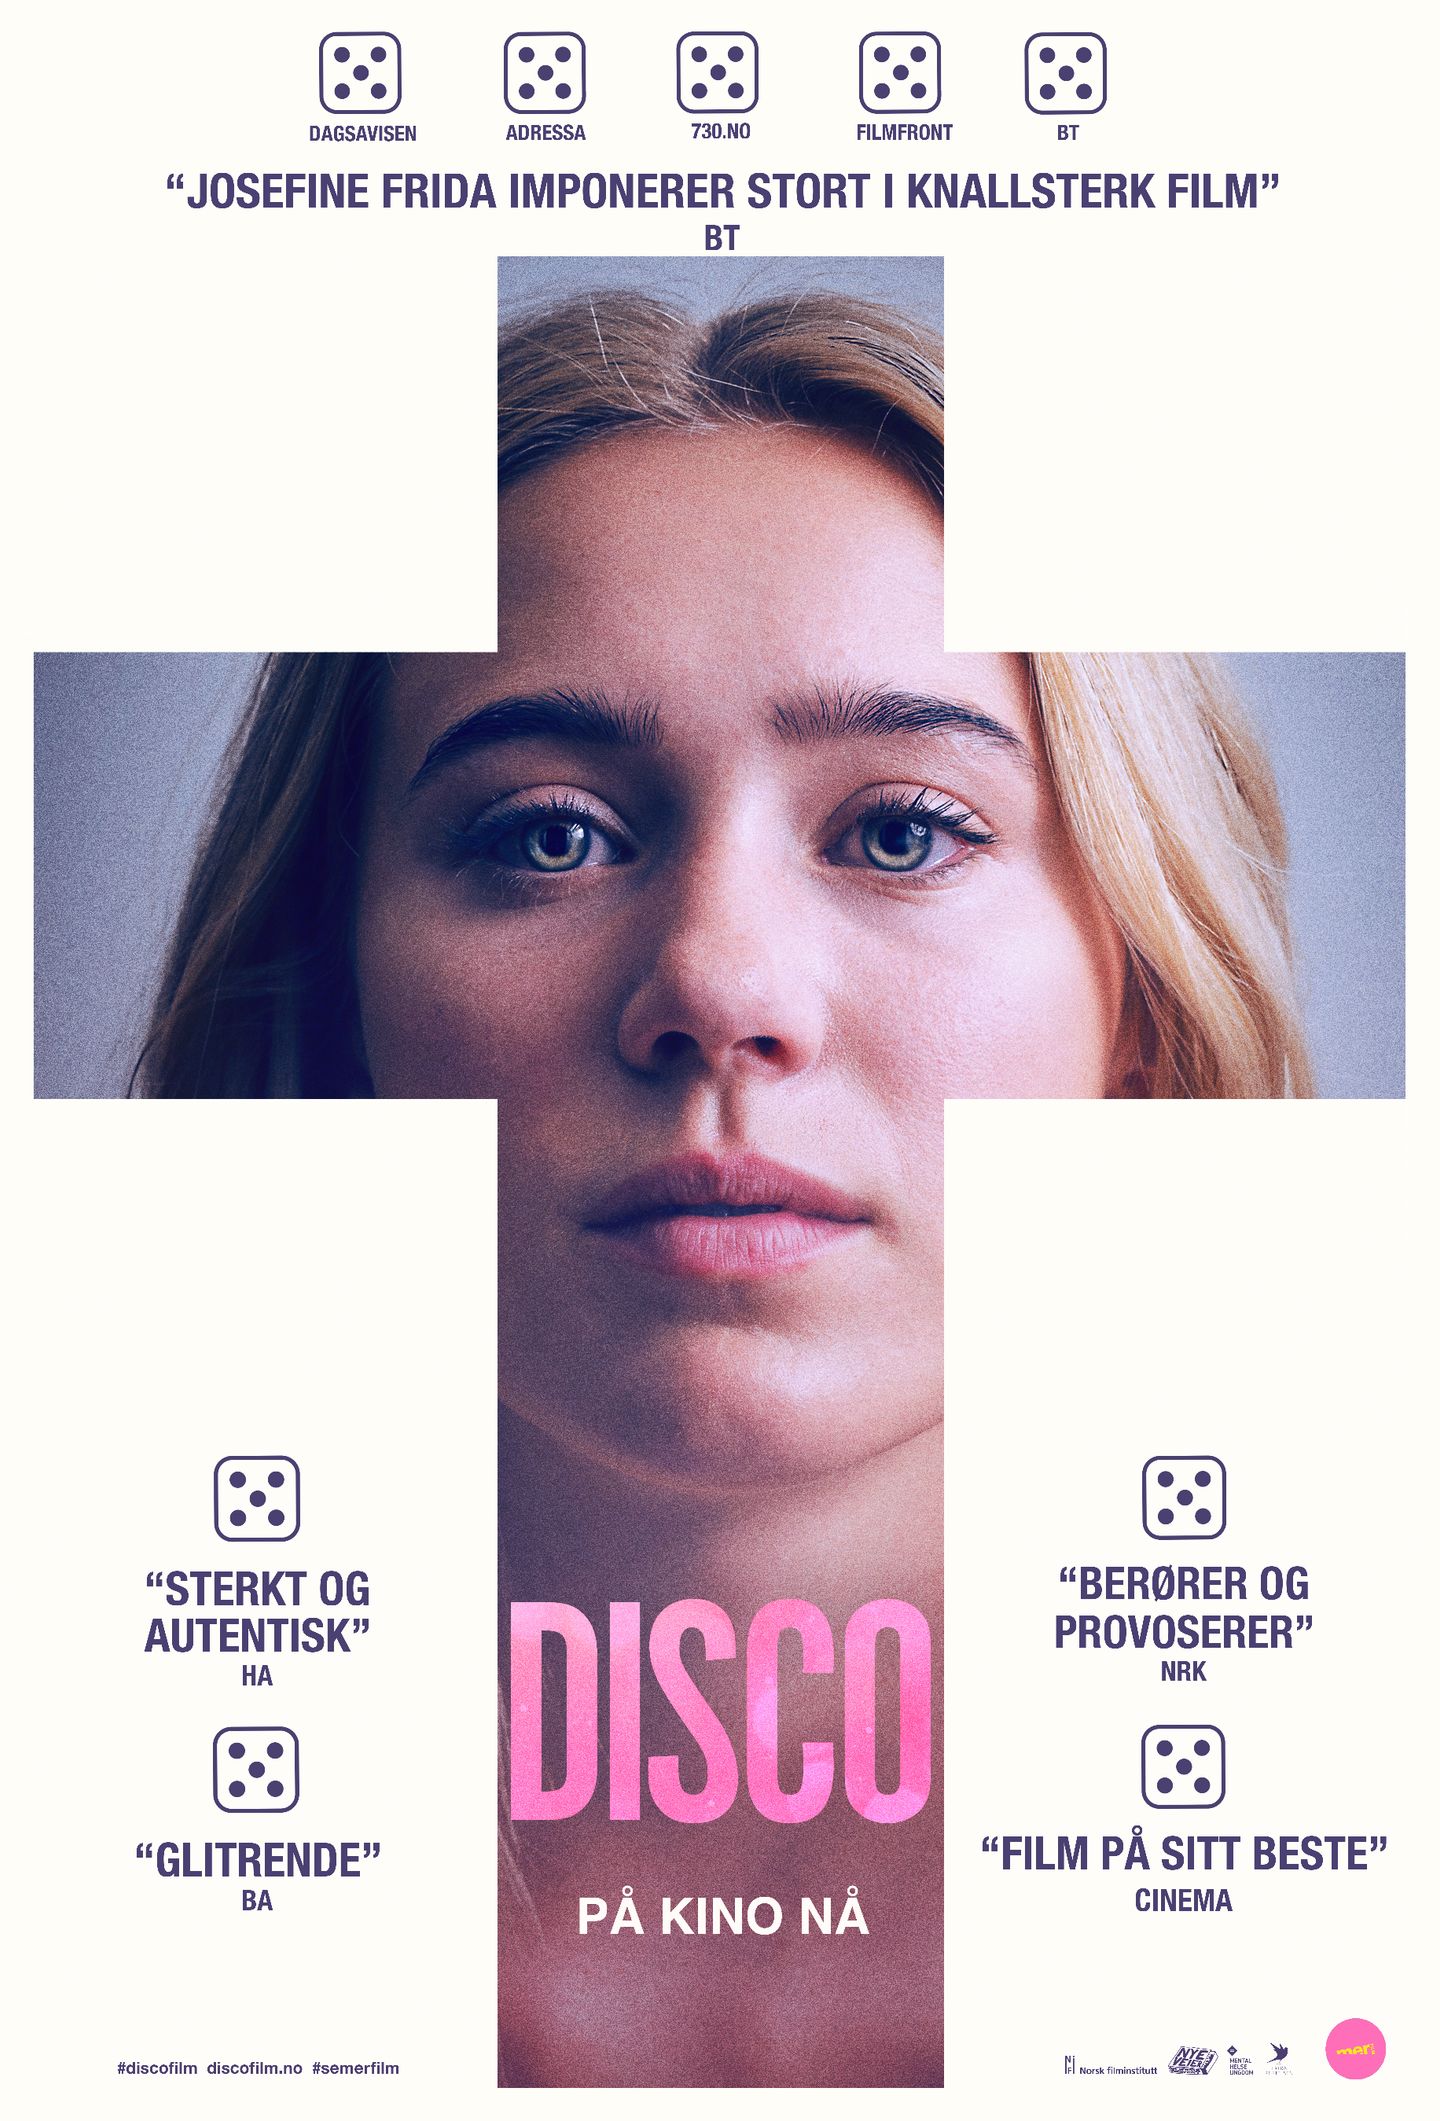 Plakat for 'Disco'